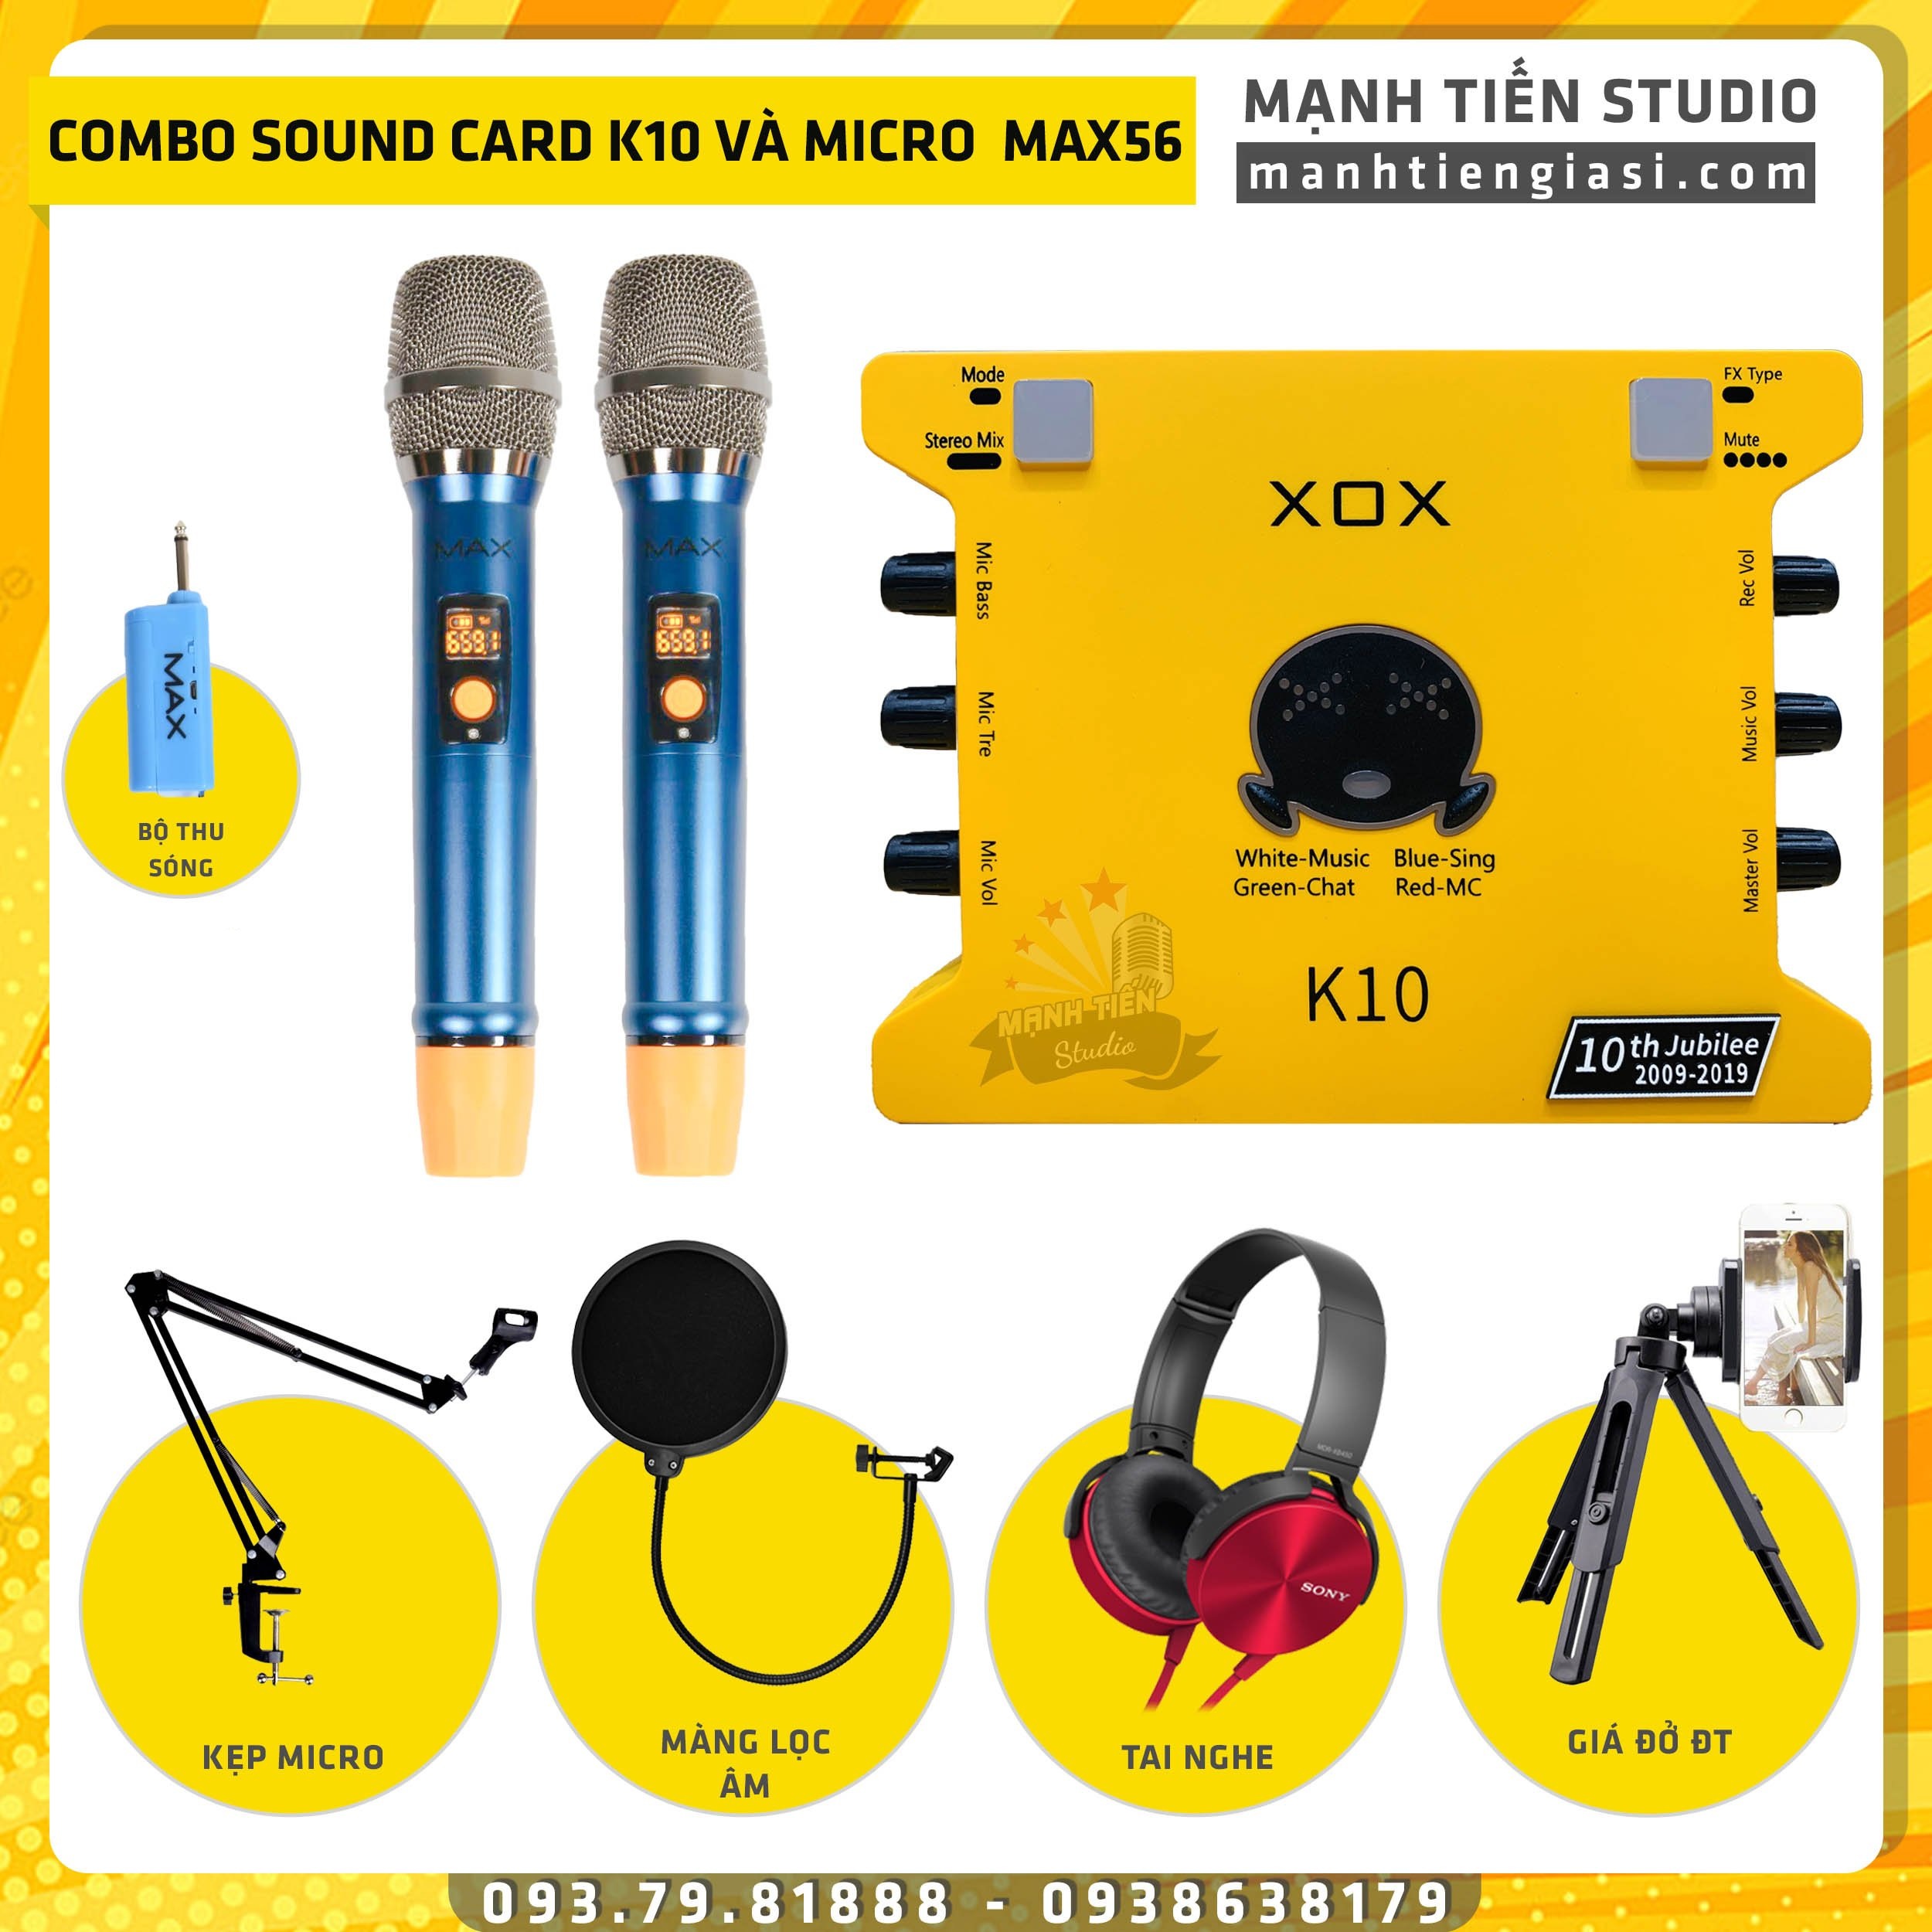 [Combo livestream 2021] Bộ Combo livestream Micro Max 56 + Sound card XOX K10 jubilee - Karaoke online không dây, song ca cực dễ dàng - Kèm full phụ kiện kẹp micro, màng lọc, tai nghe chụp tai, giá đỡ đt - Thu âm, livestream chuyên nghiệp - MTMax